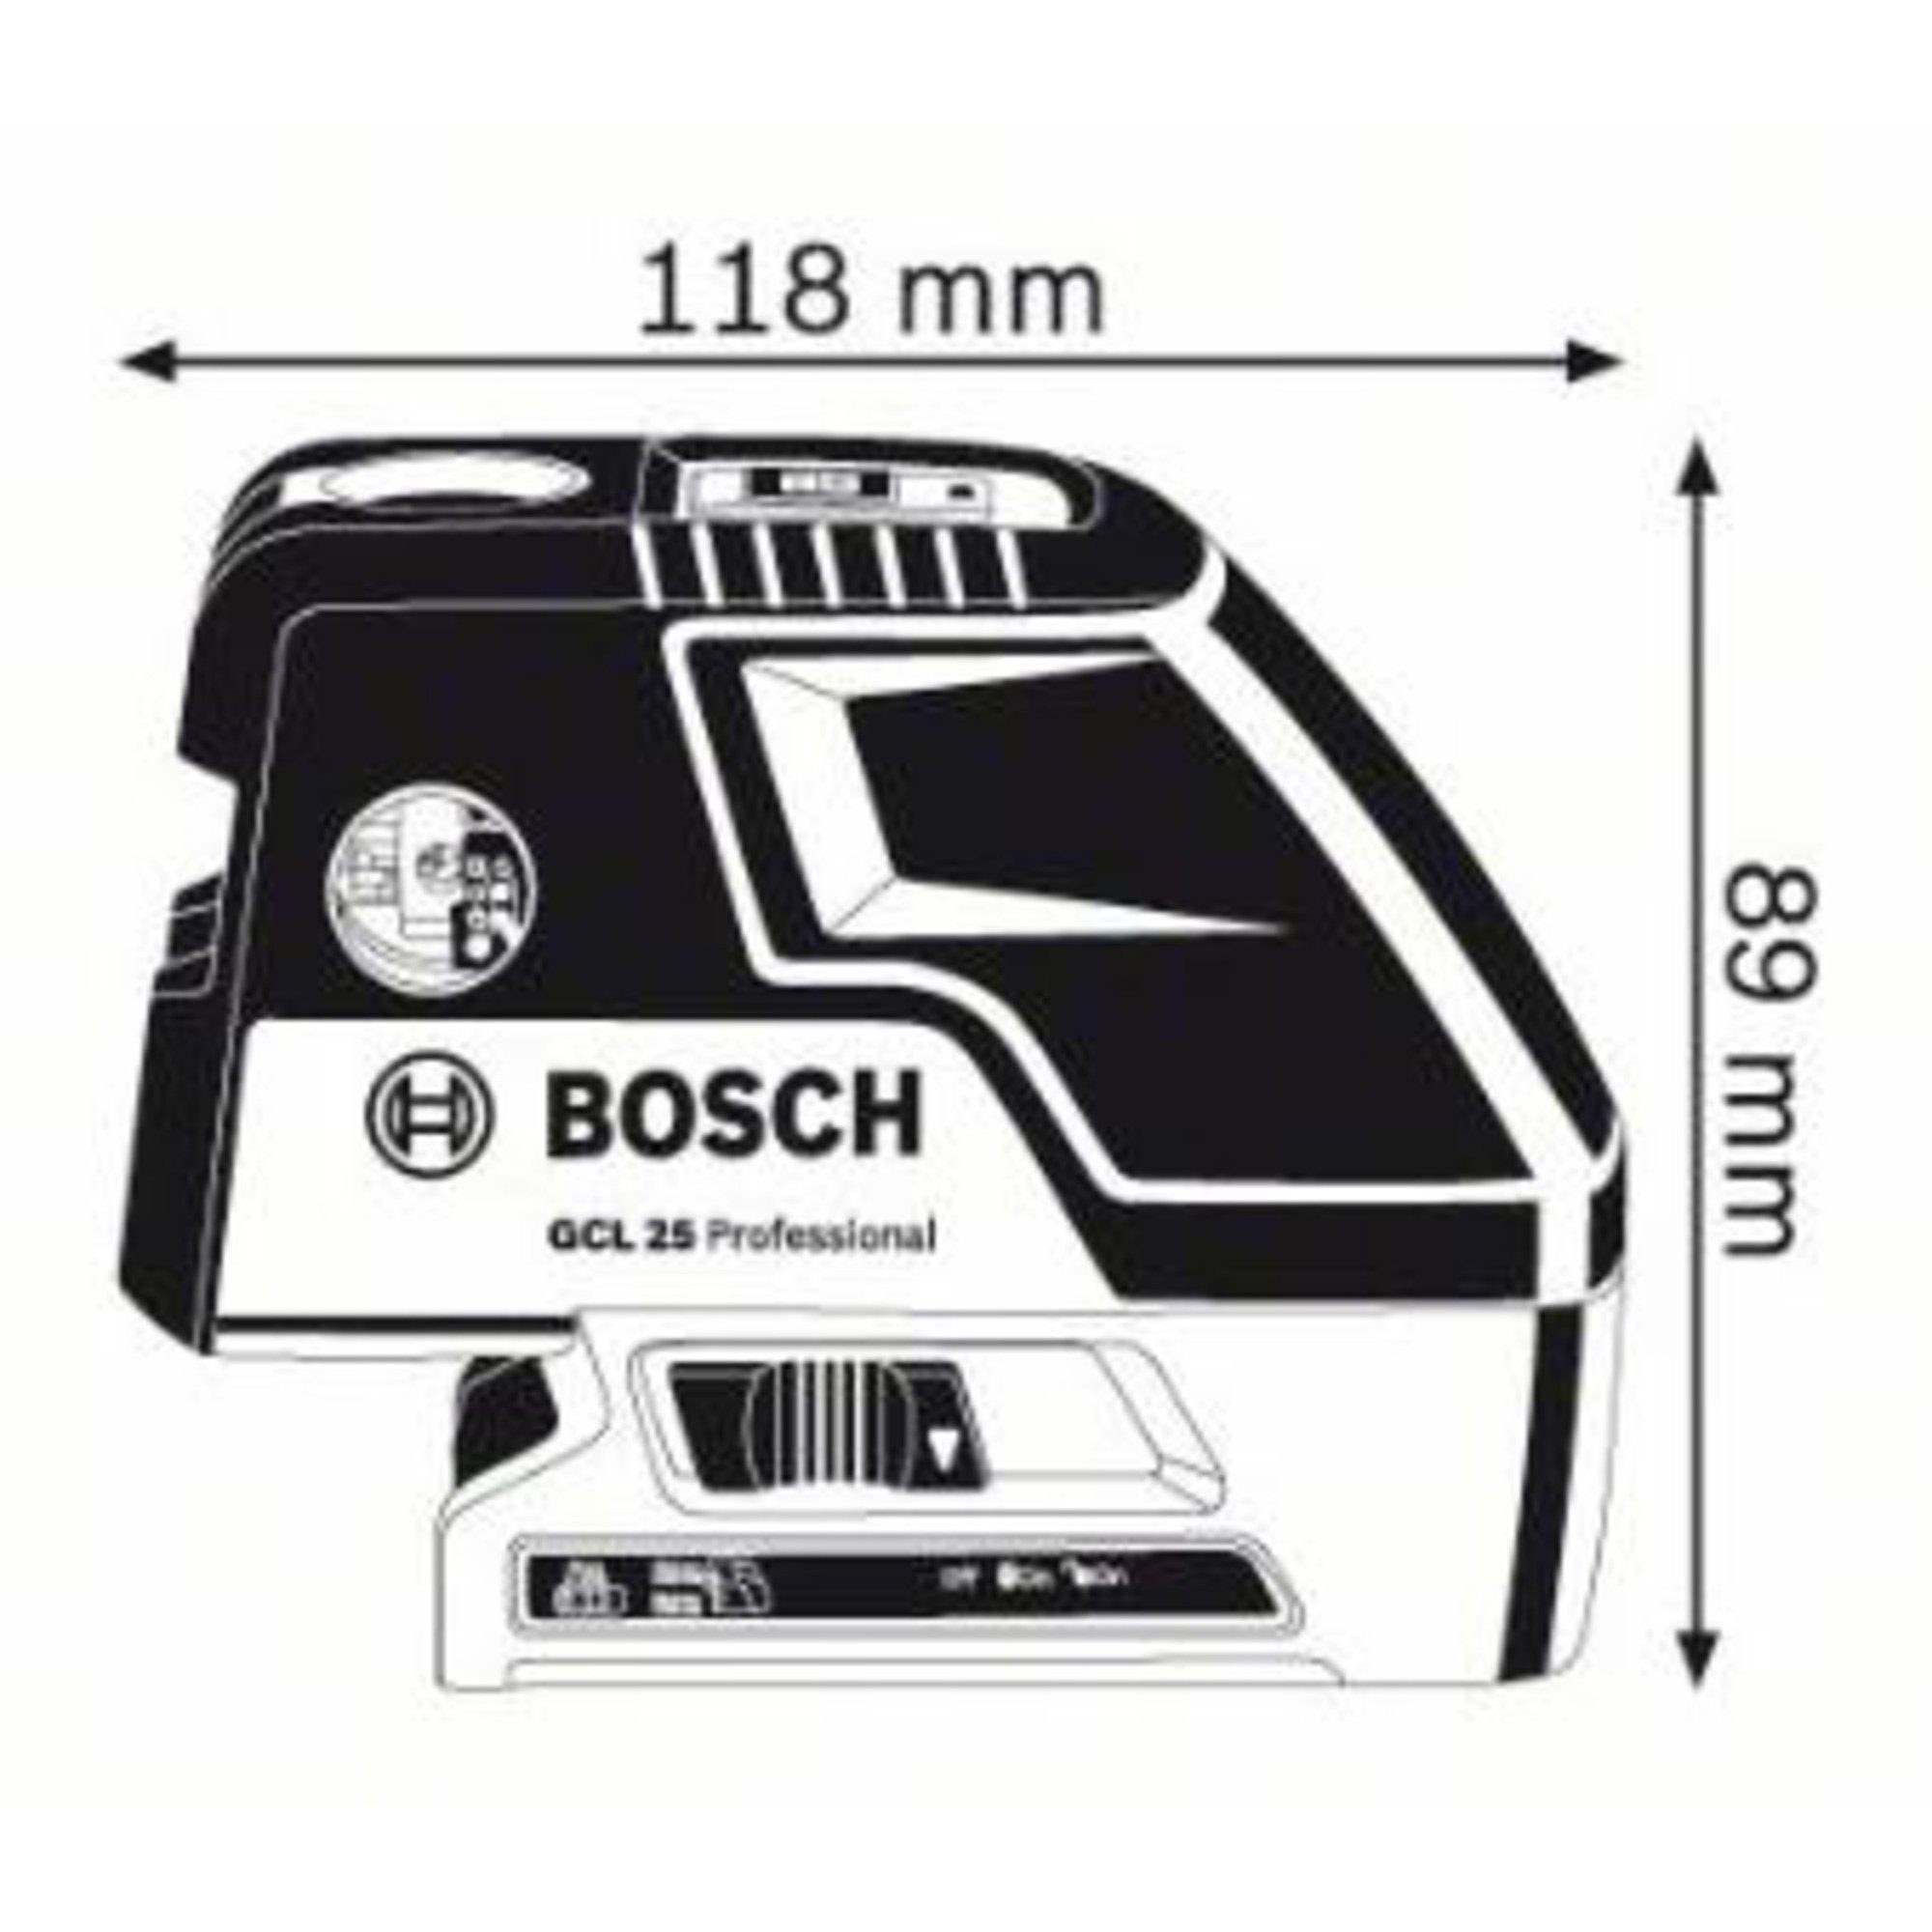 BOSCH Akku-Multifunktionswerkzeug Bosch Professional Professional 25 GCL Kombilaser